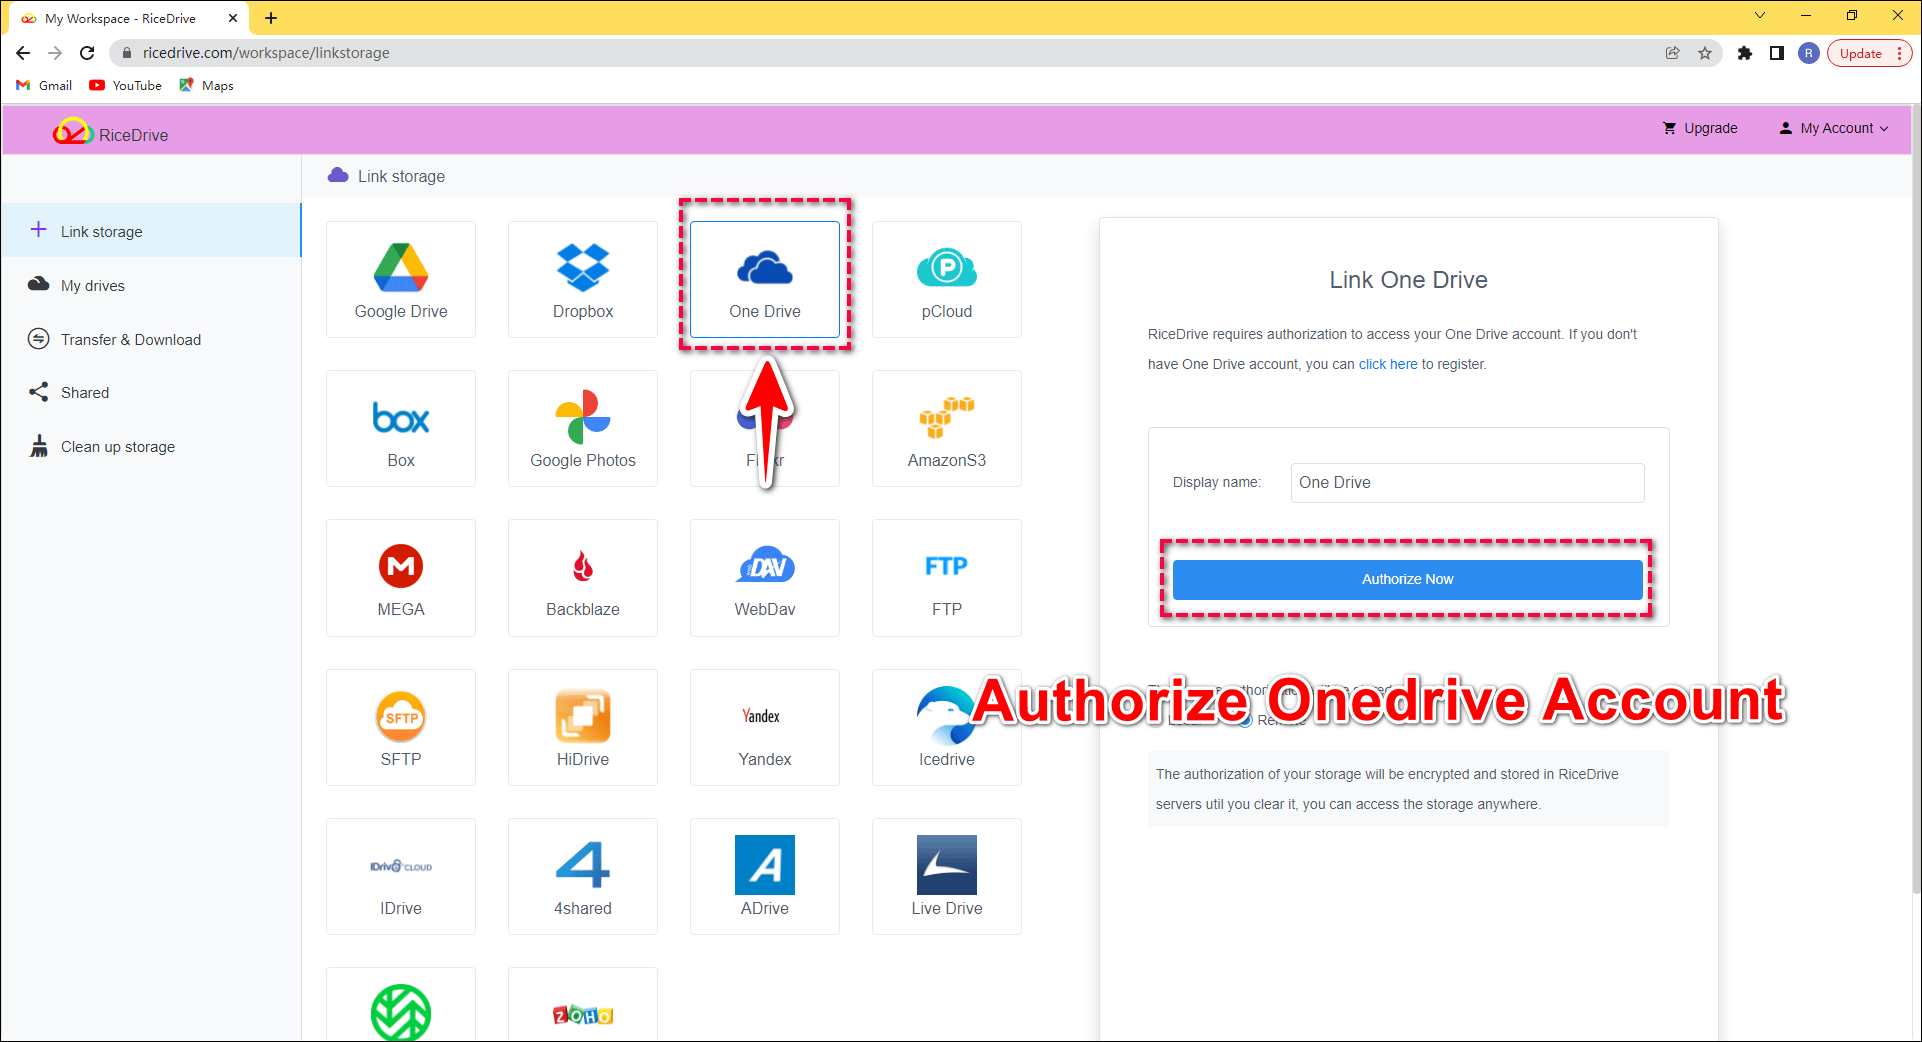 Authorize OneDrive account